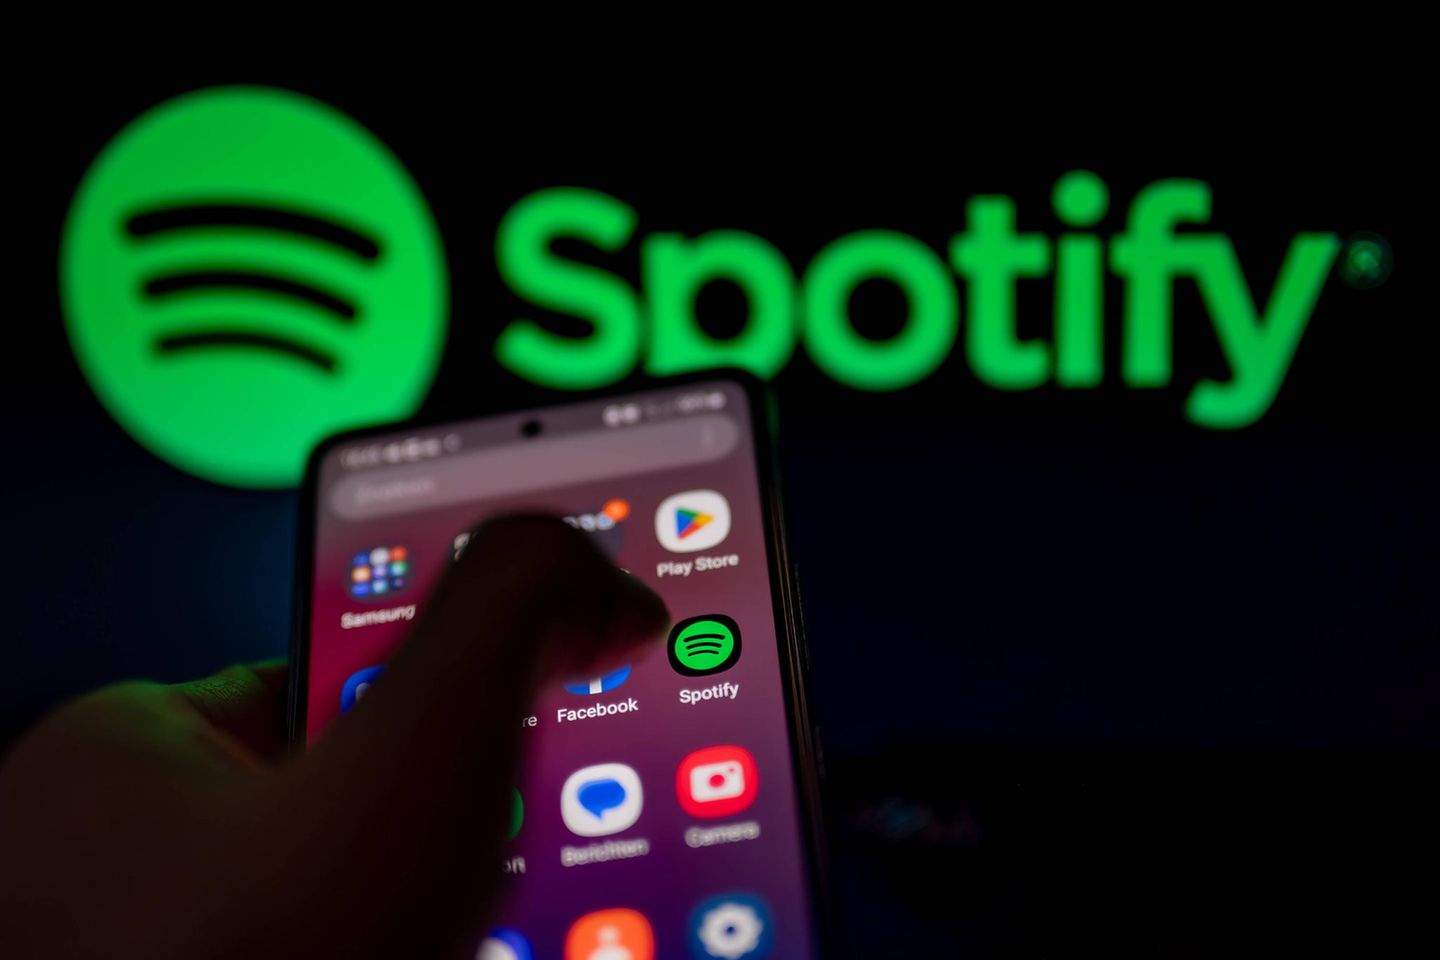 Spotify: Die Musikstreamingplattform gehört zu den beliebtesten Apps weltweit. Insgesamt nutzen mehr als 550 Millionen Menschen die Dienste des schwedischen Unternehmens.